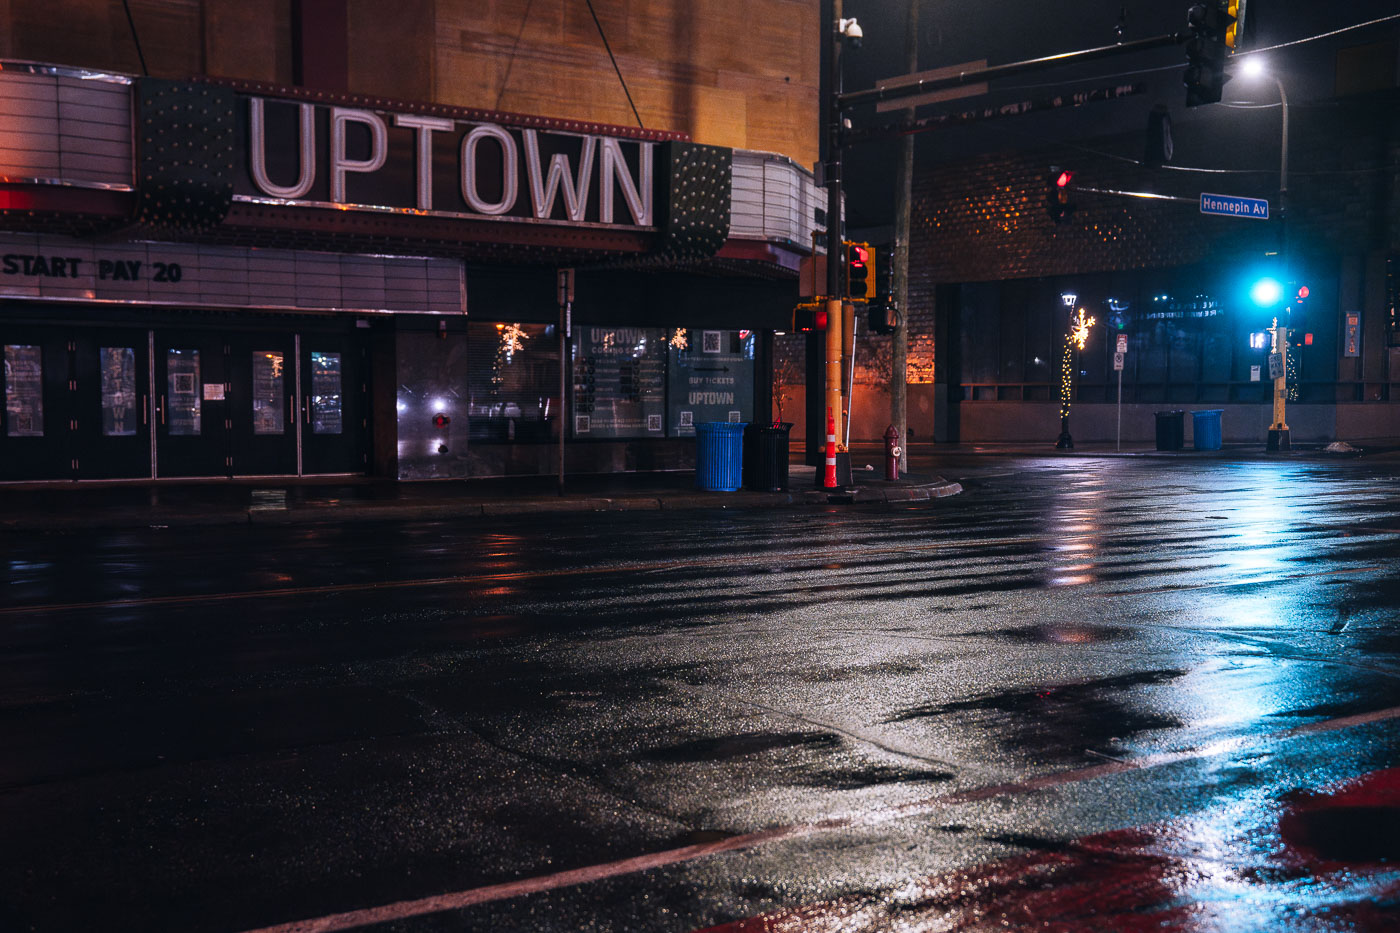 Dark Uptown Theater on rainy night